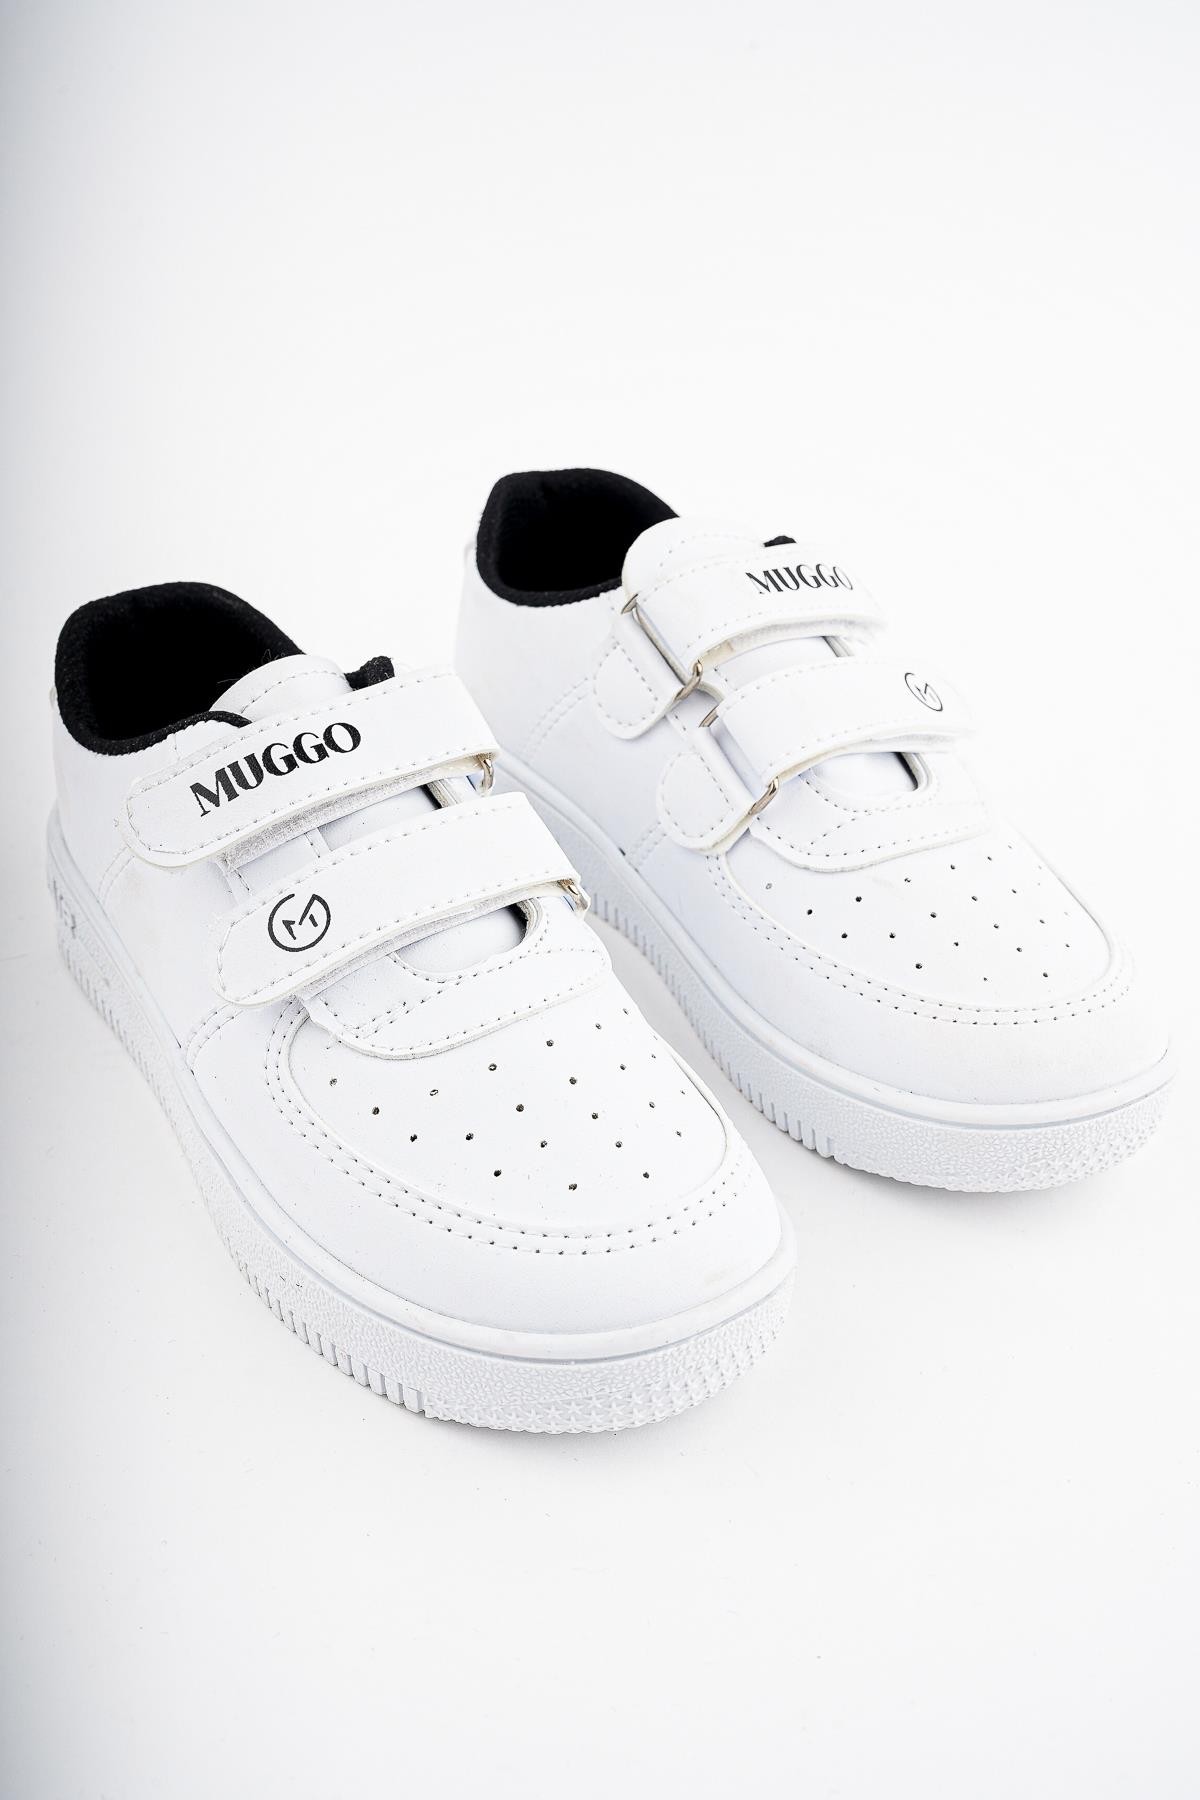 Muggo FRED Garantili Unisex Çocuk Cırtlı Rahat Günlük Sneaker Spor Ayakkabı - SİYAH- BEYAZ